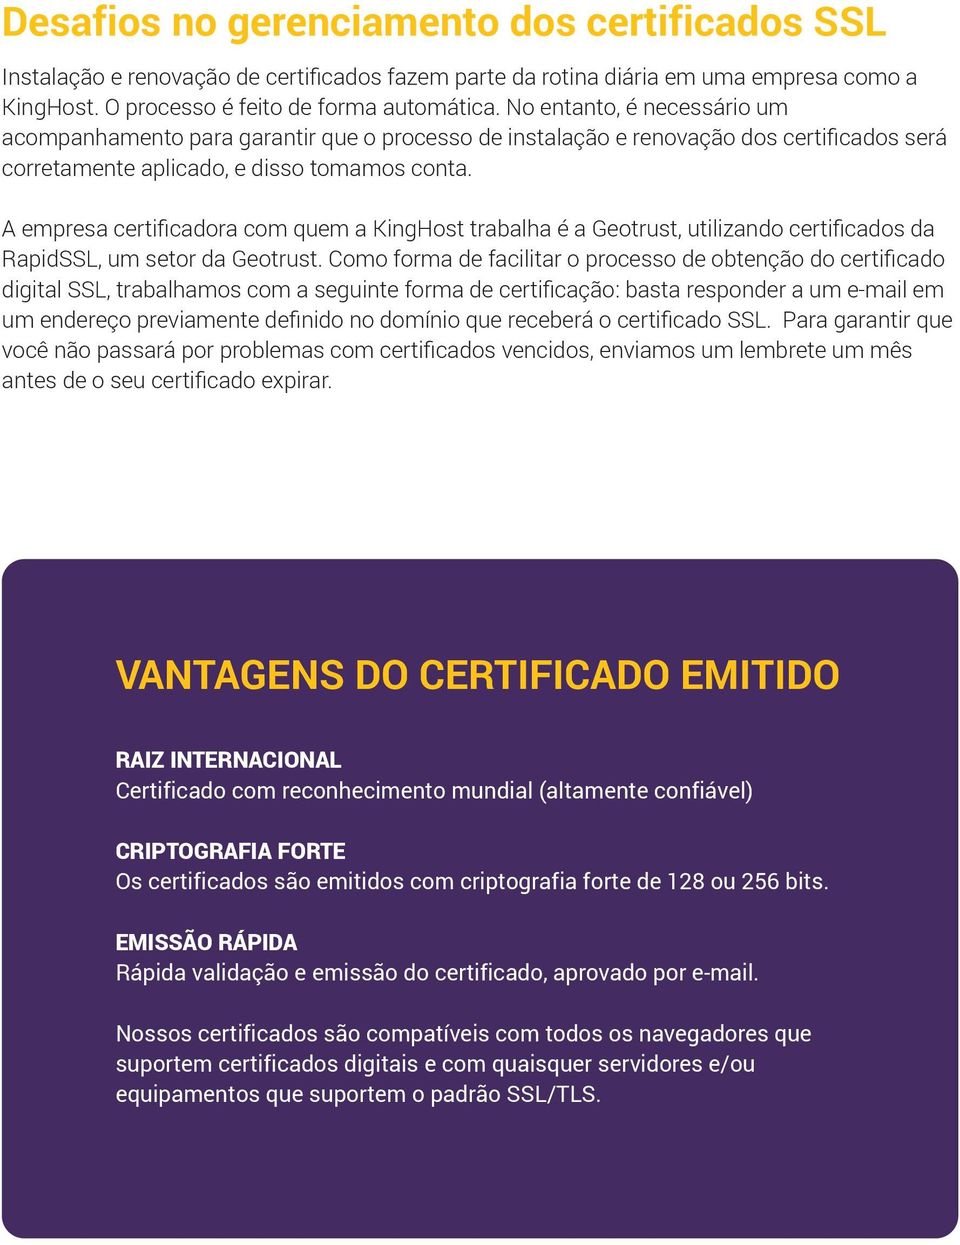 A empresa certificadora com quem a KingHost trabalha é a Geotrust, utilizando certificados da RapidSSL, um setor da Geotrust.